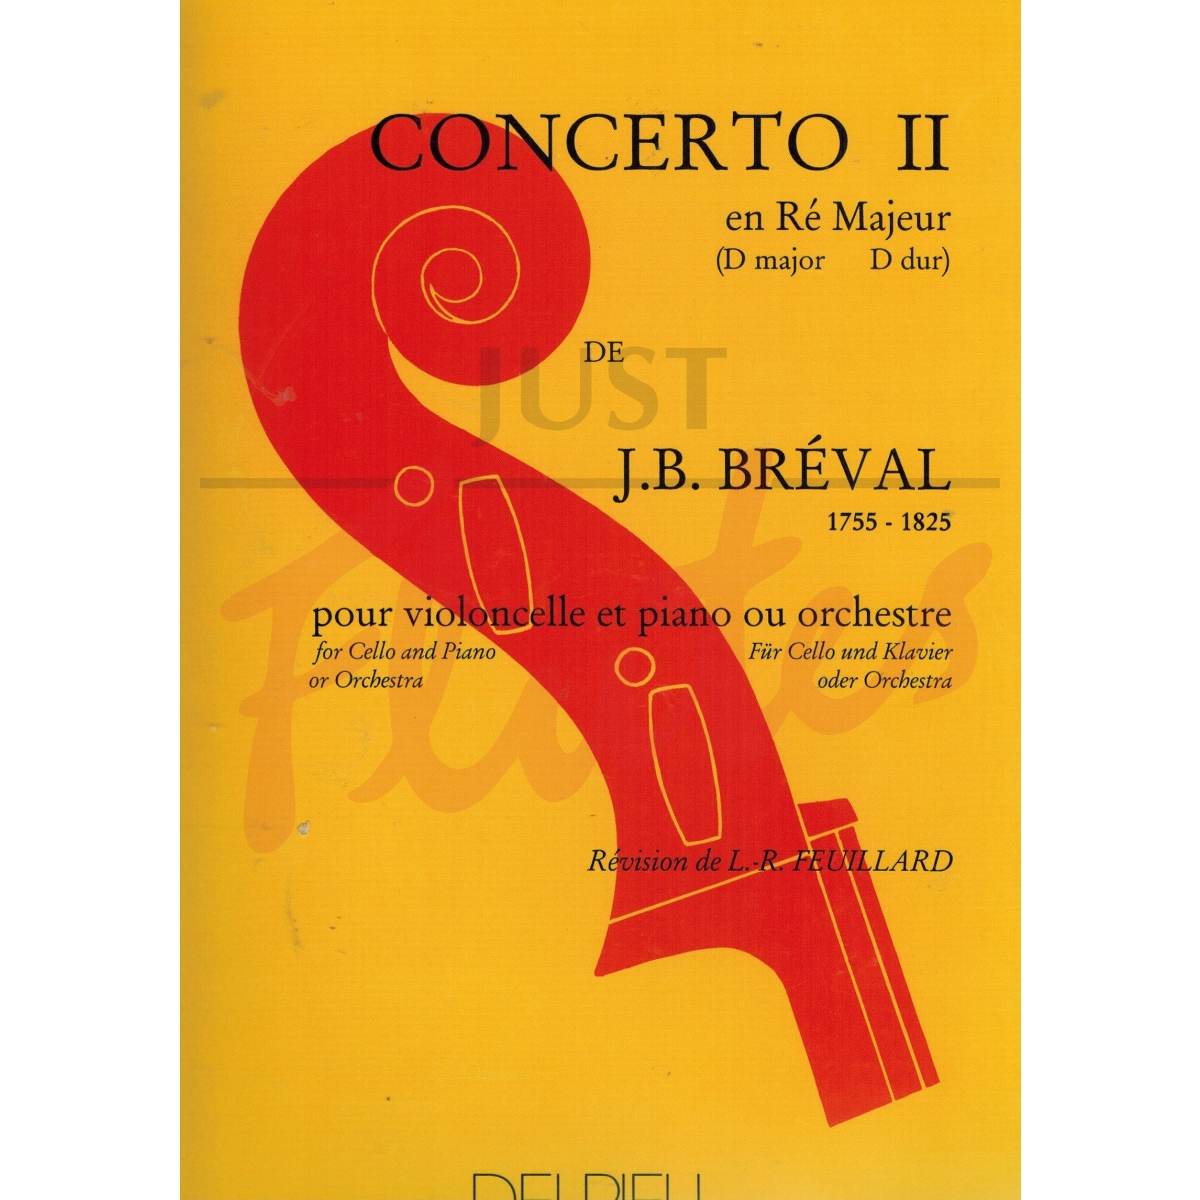 Concerto no. 2 in D major